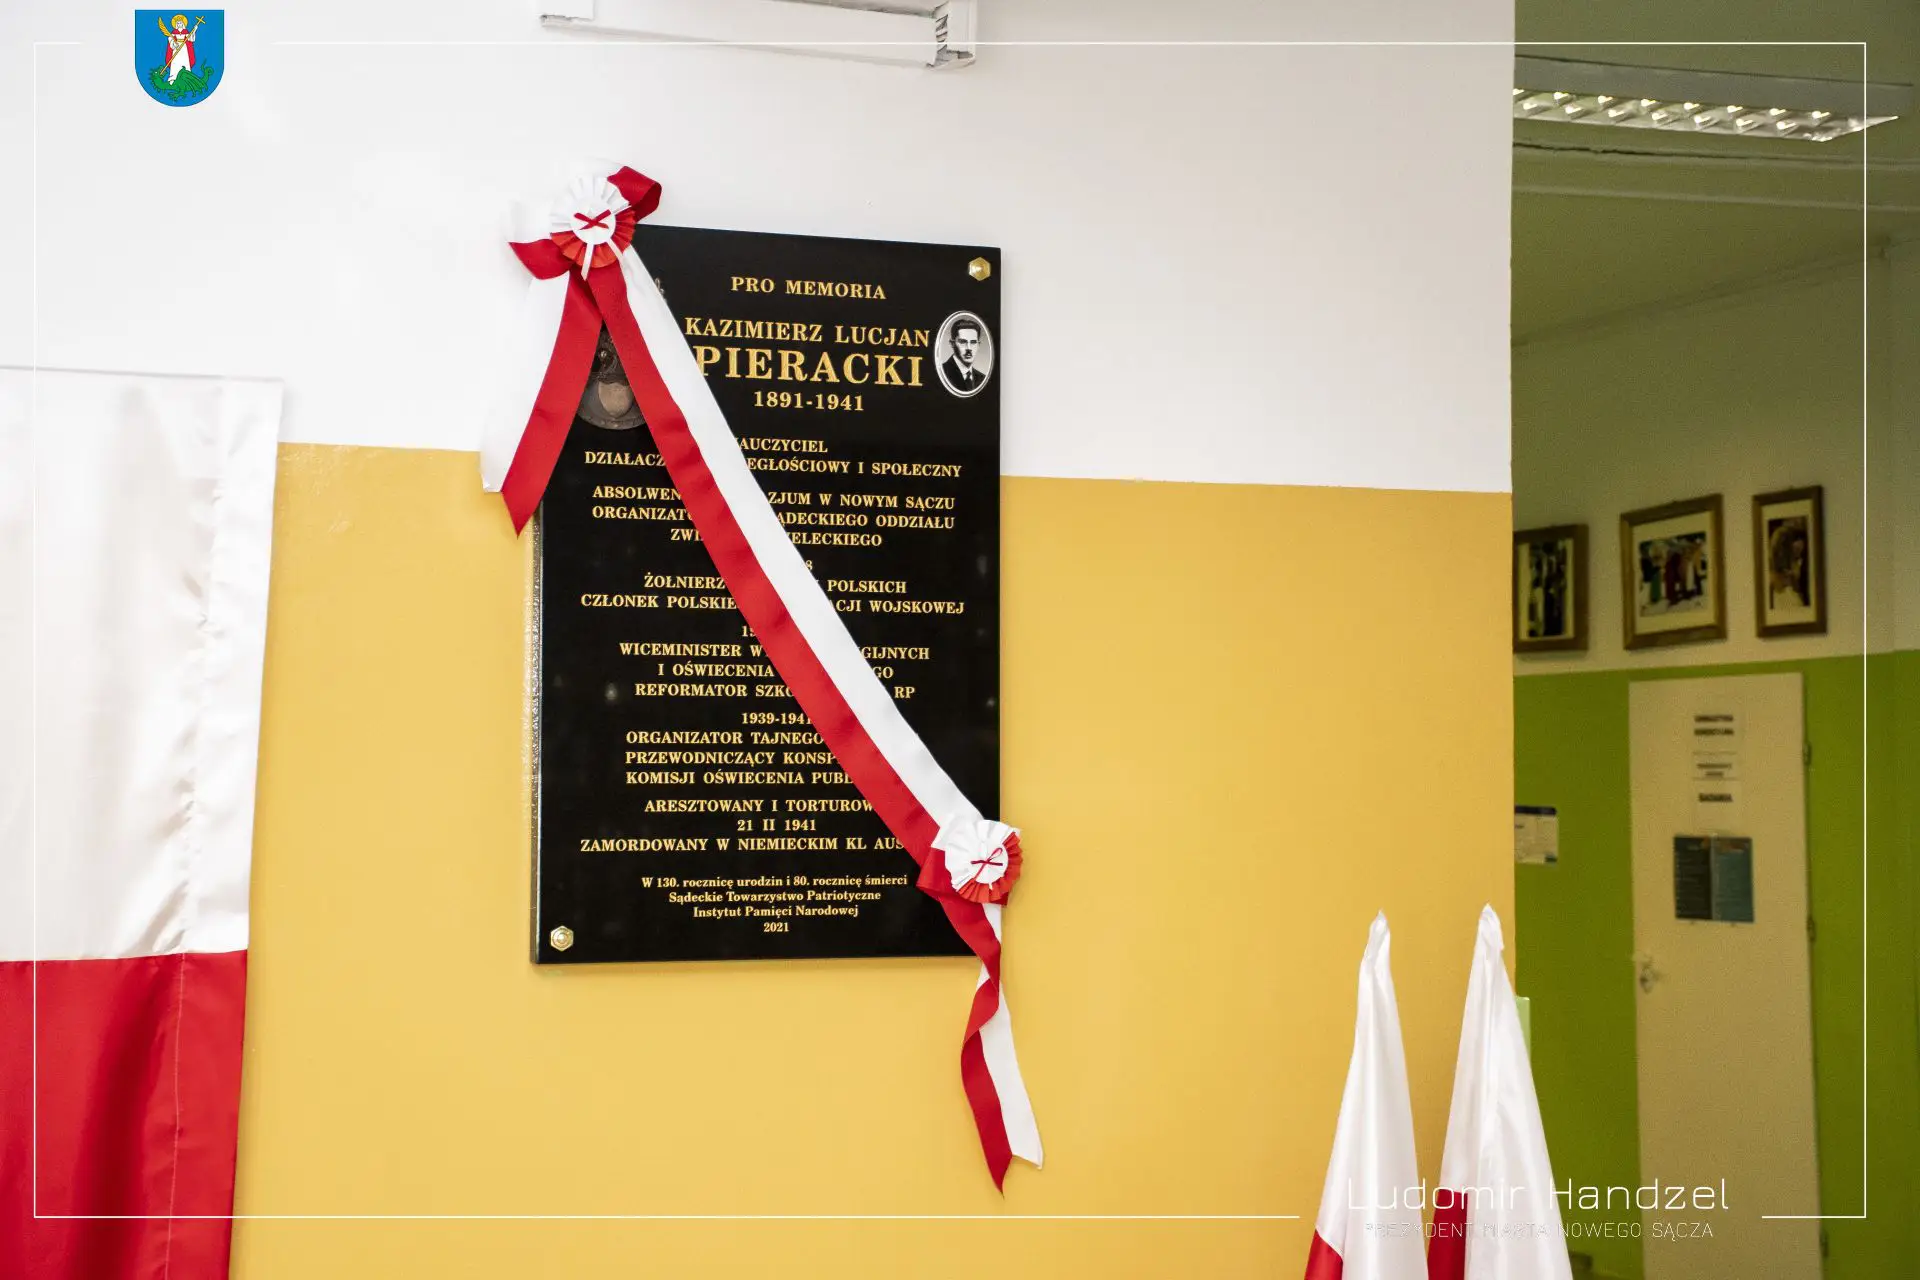 Nowy Sącz: W IV LO Sportowym odsłonięto tablicę upamiętniającą postać Kazimierza Pierackiego